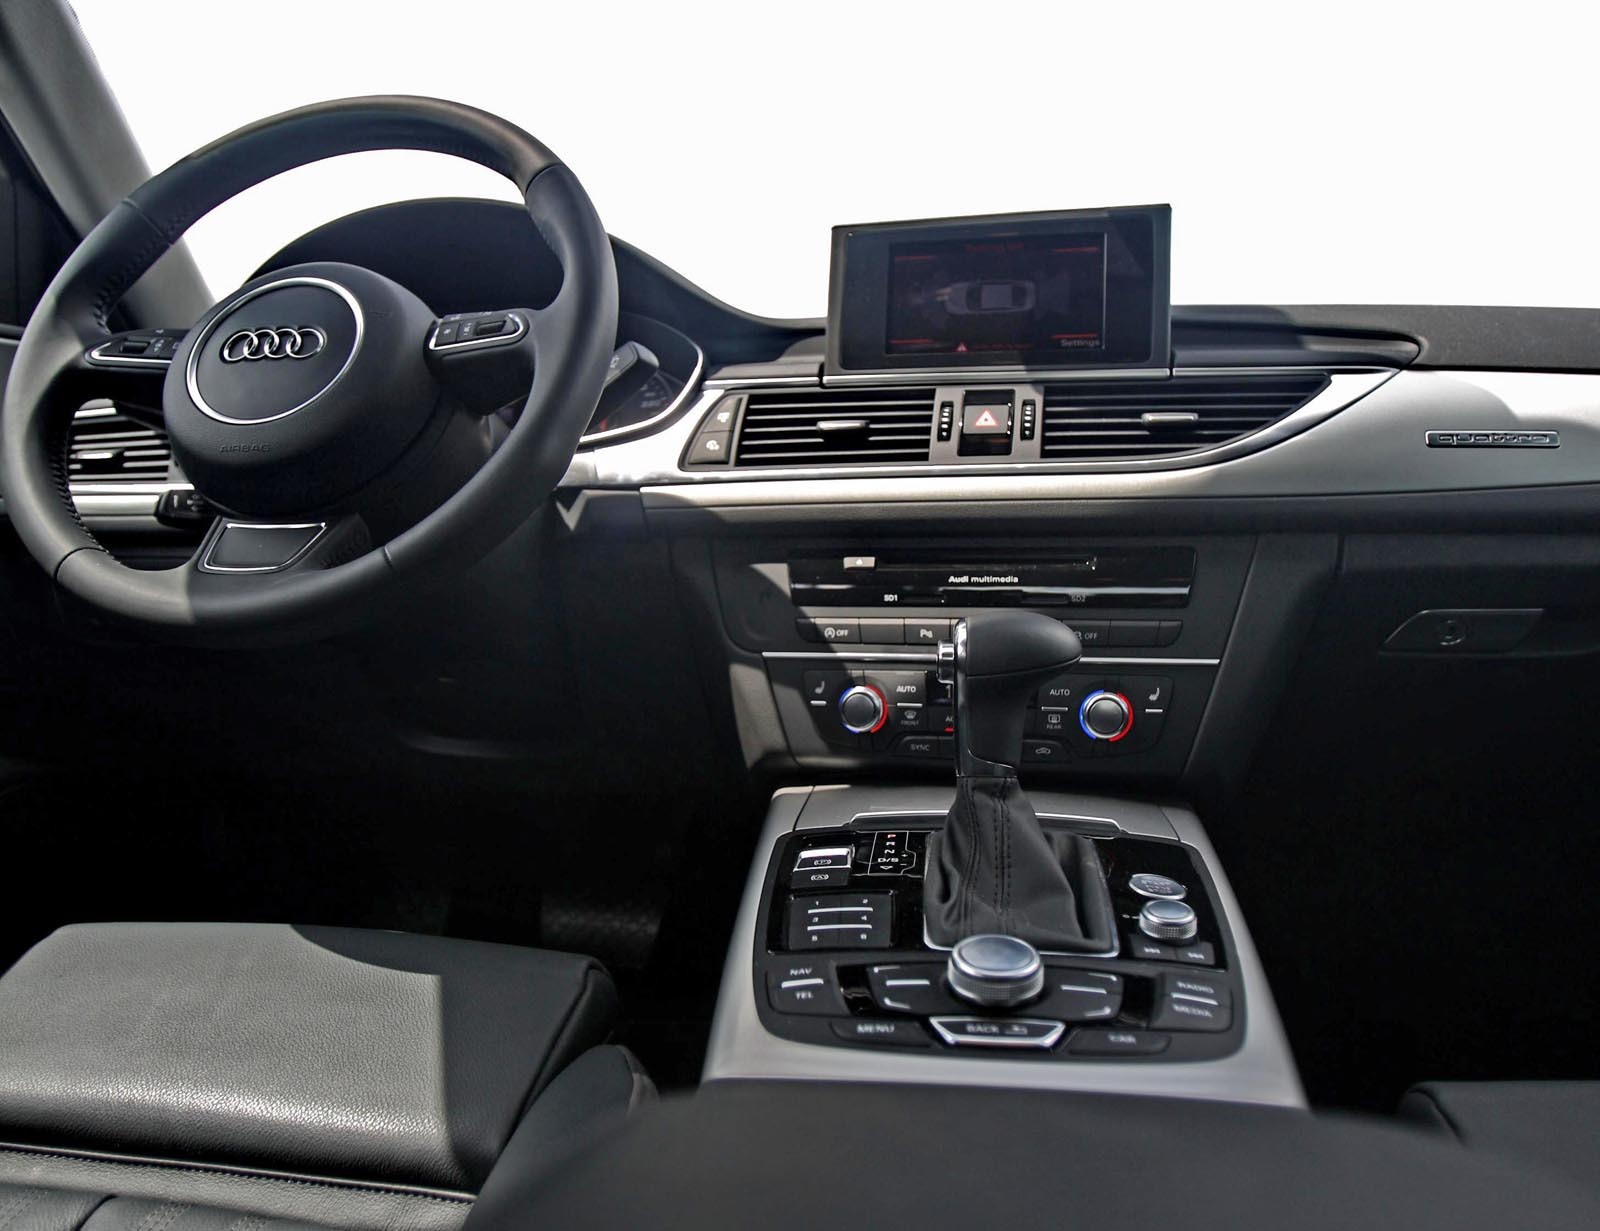 Audi A6 poate depasi lejer 80.000 euro, avand o lista bogata de optiuni de lux